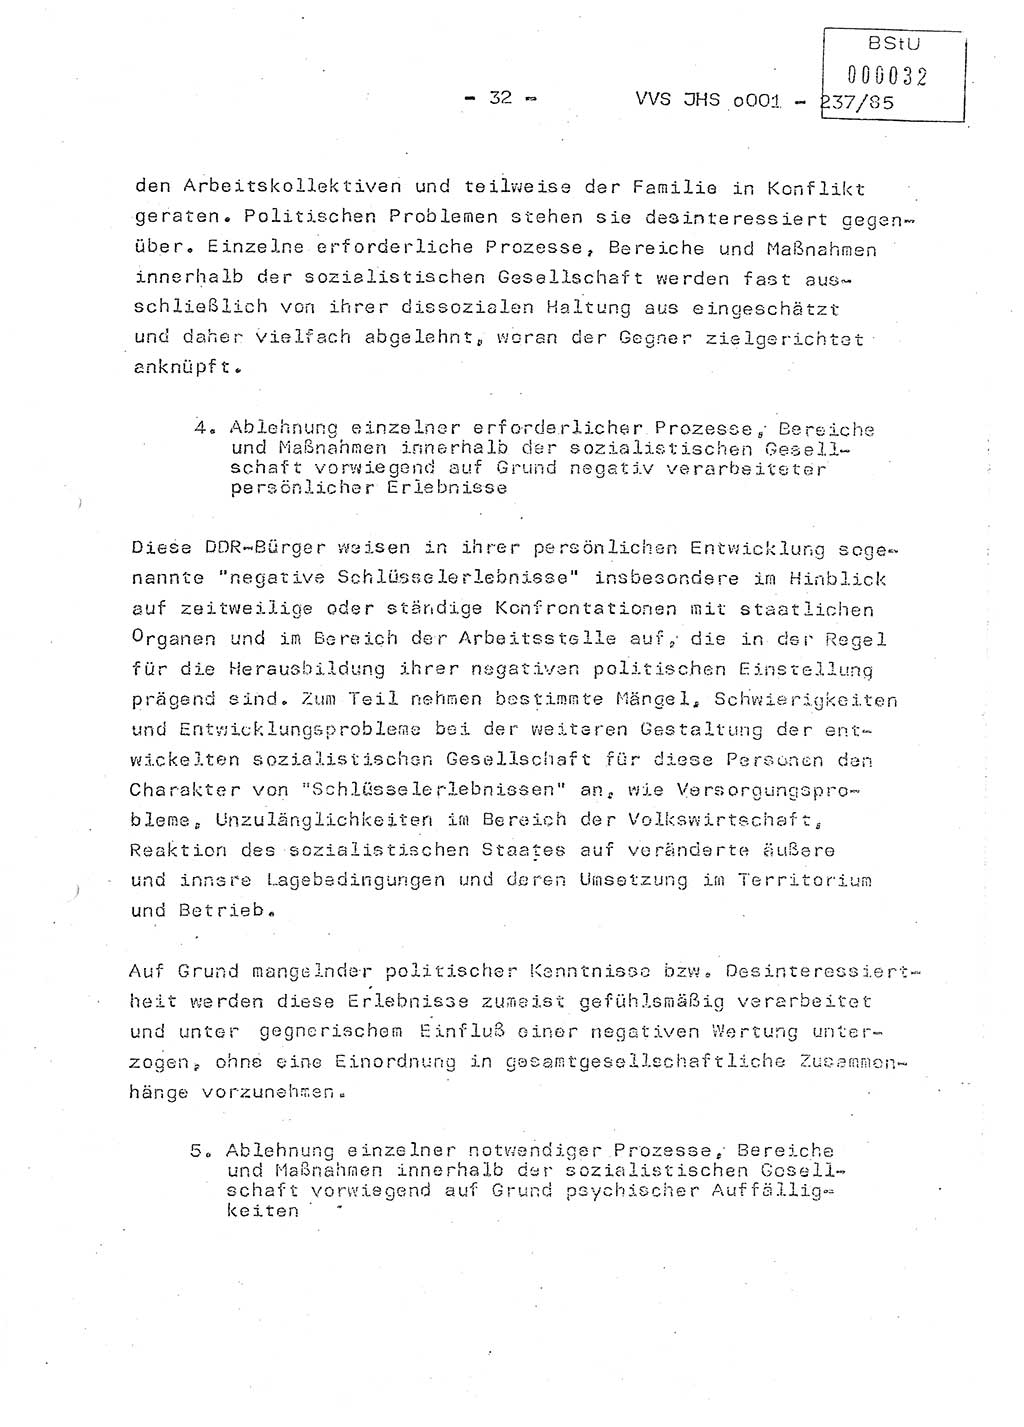 Dissertation Oberstleutnant Peter Jakulski (JHS), Oberstleutnat Christian Rudolph (HA Ⅸ), Major Horst Böttger (ZMD), Major Wolfgang Grüneberg (JHS), Major Albert Meutsch (JHS), Ministerium für Staatssicherheit (MfS) [Deutsche Demokratische Republik (DDR)], Juristische Hochschule (JHS), Vertrauliche Verschlußsache (VVS) o001-237/85, Potsdam 1985, Seite 32 (Diss. MfS DDR JHS VVS o001-237/85 1985, S. 32)